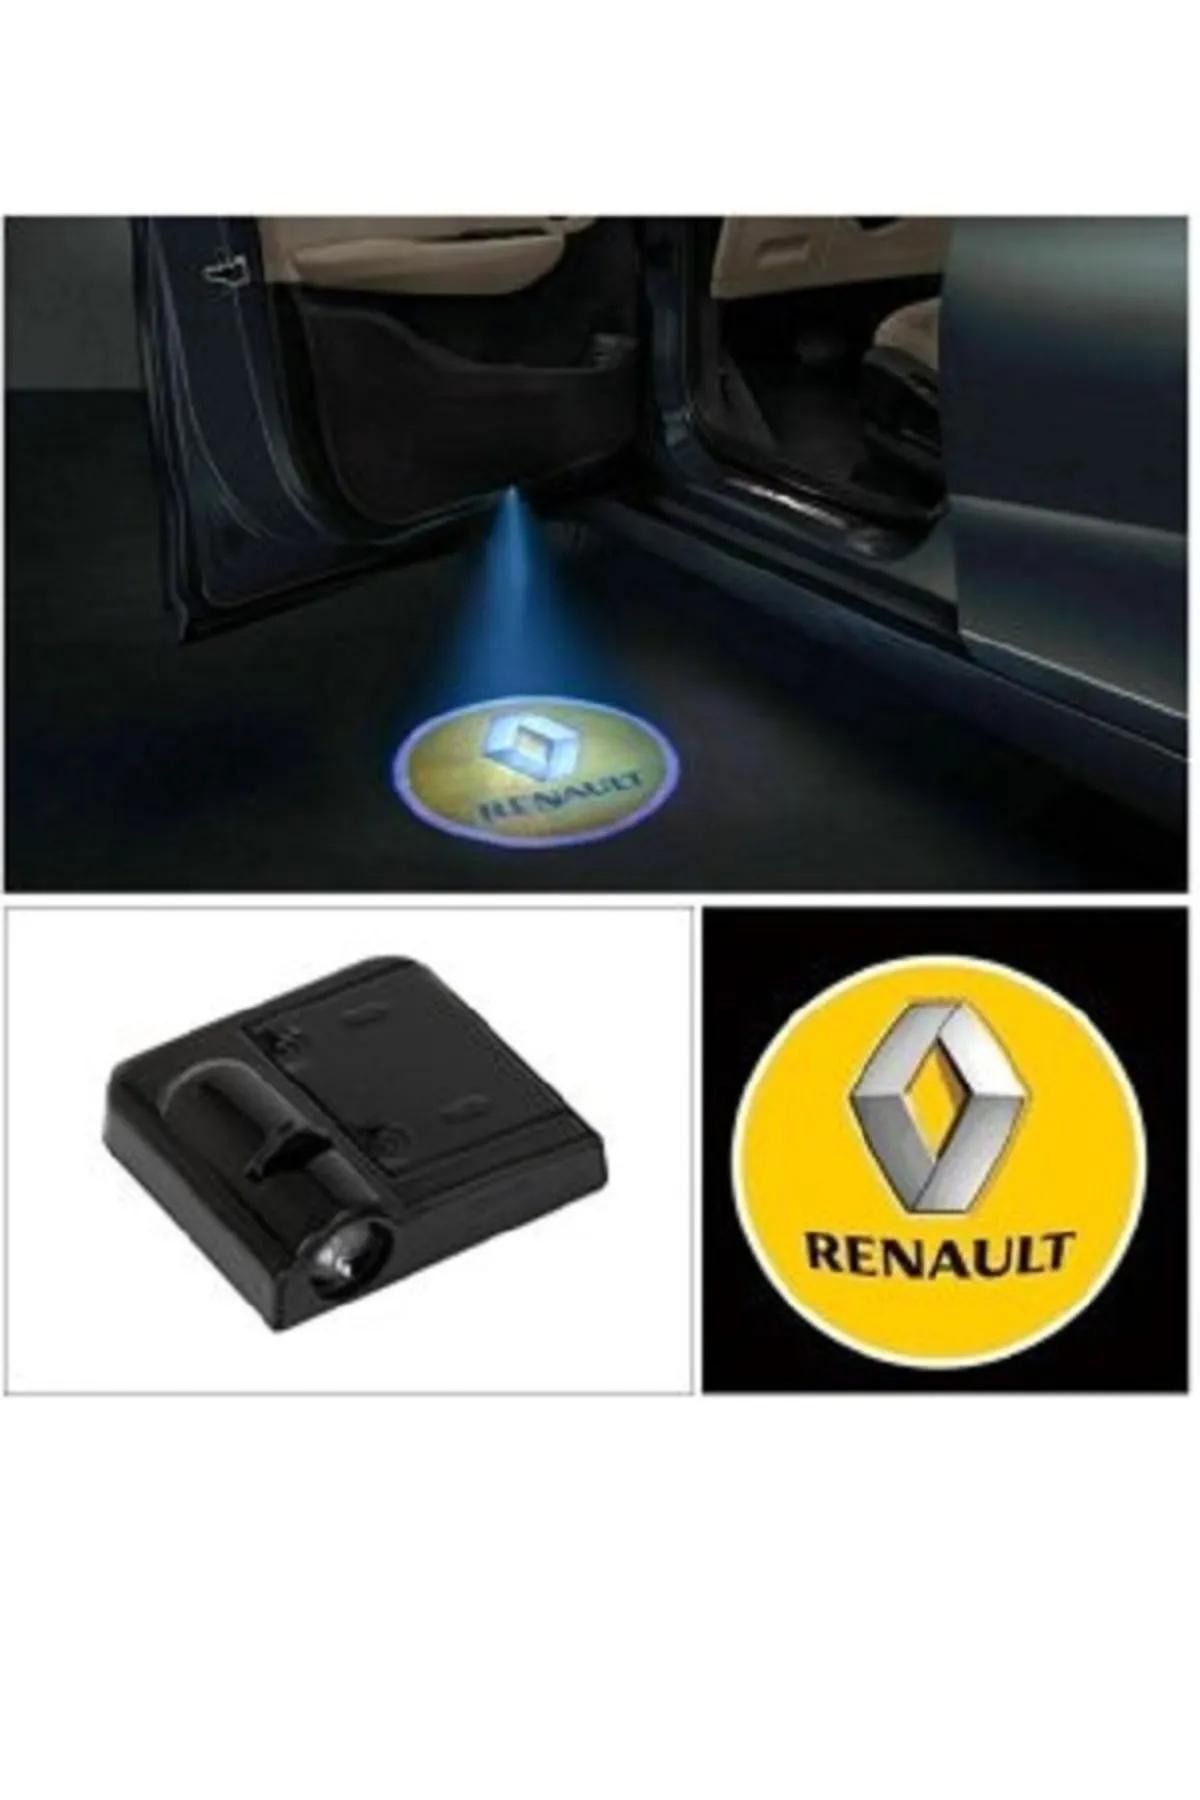 Kingstar Renault Araçları Kapı Altı Led Logo Mesafe Sensörlü Yeni Nesil